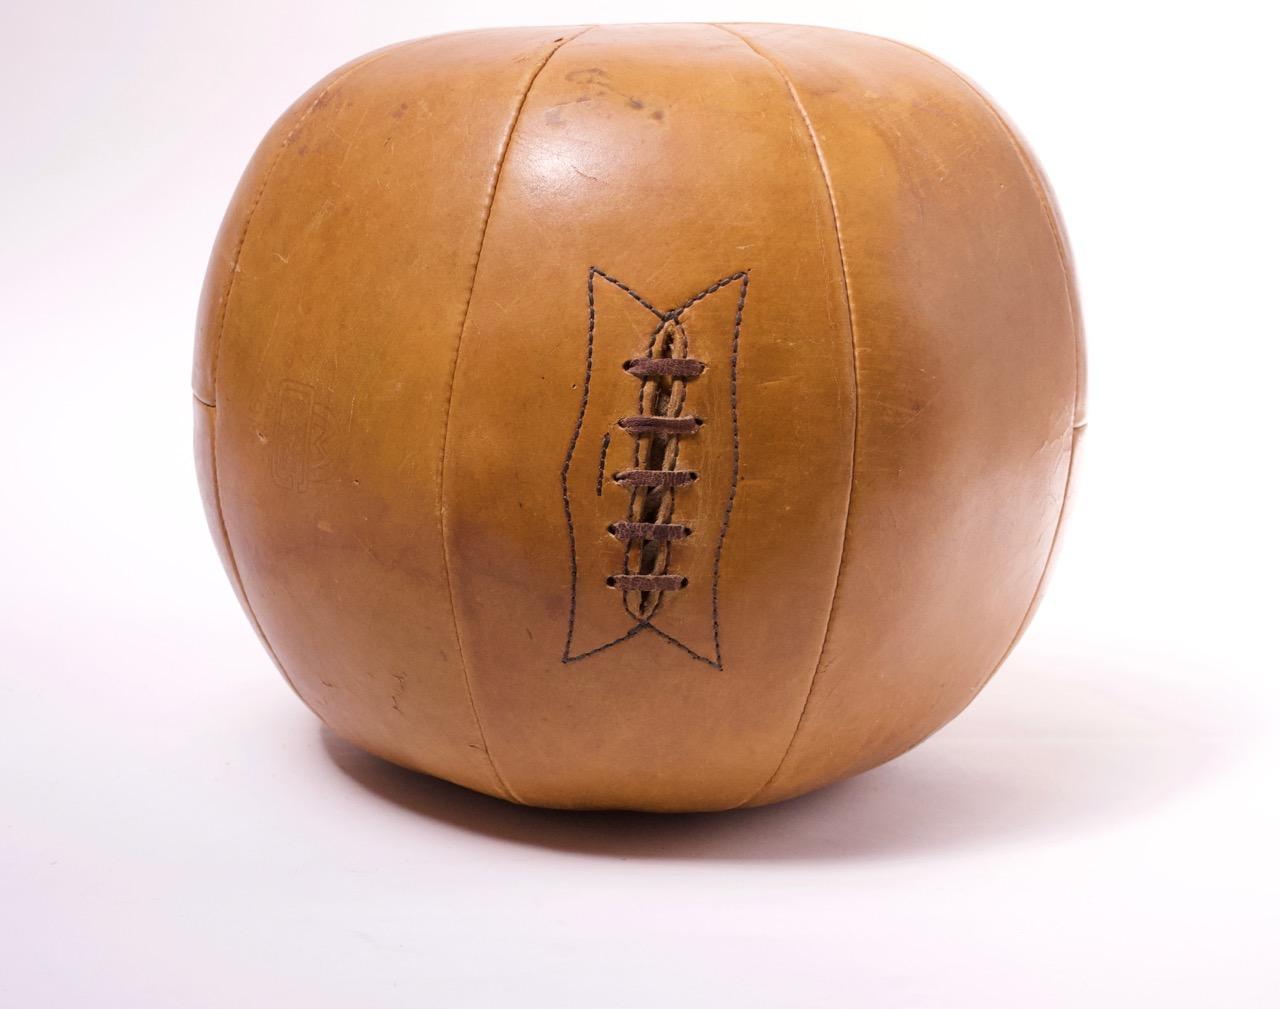 1940s basketball ball